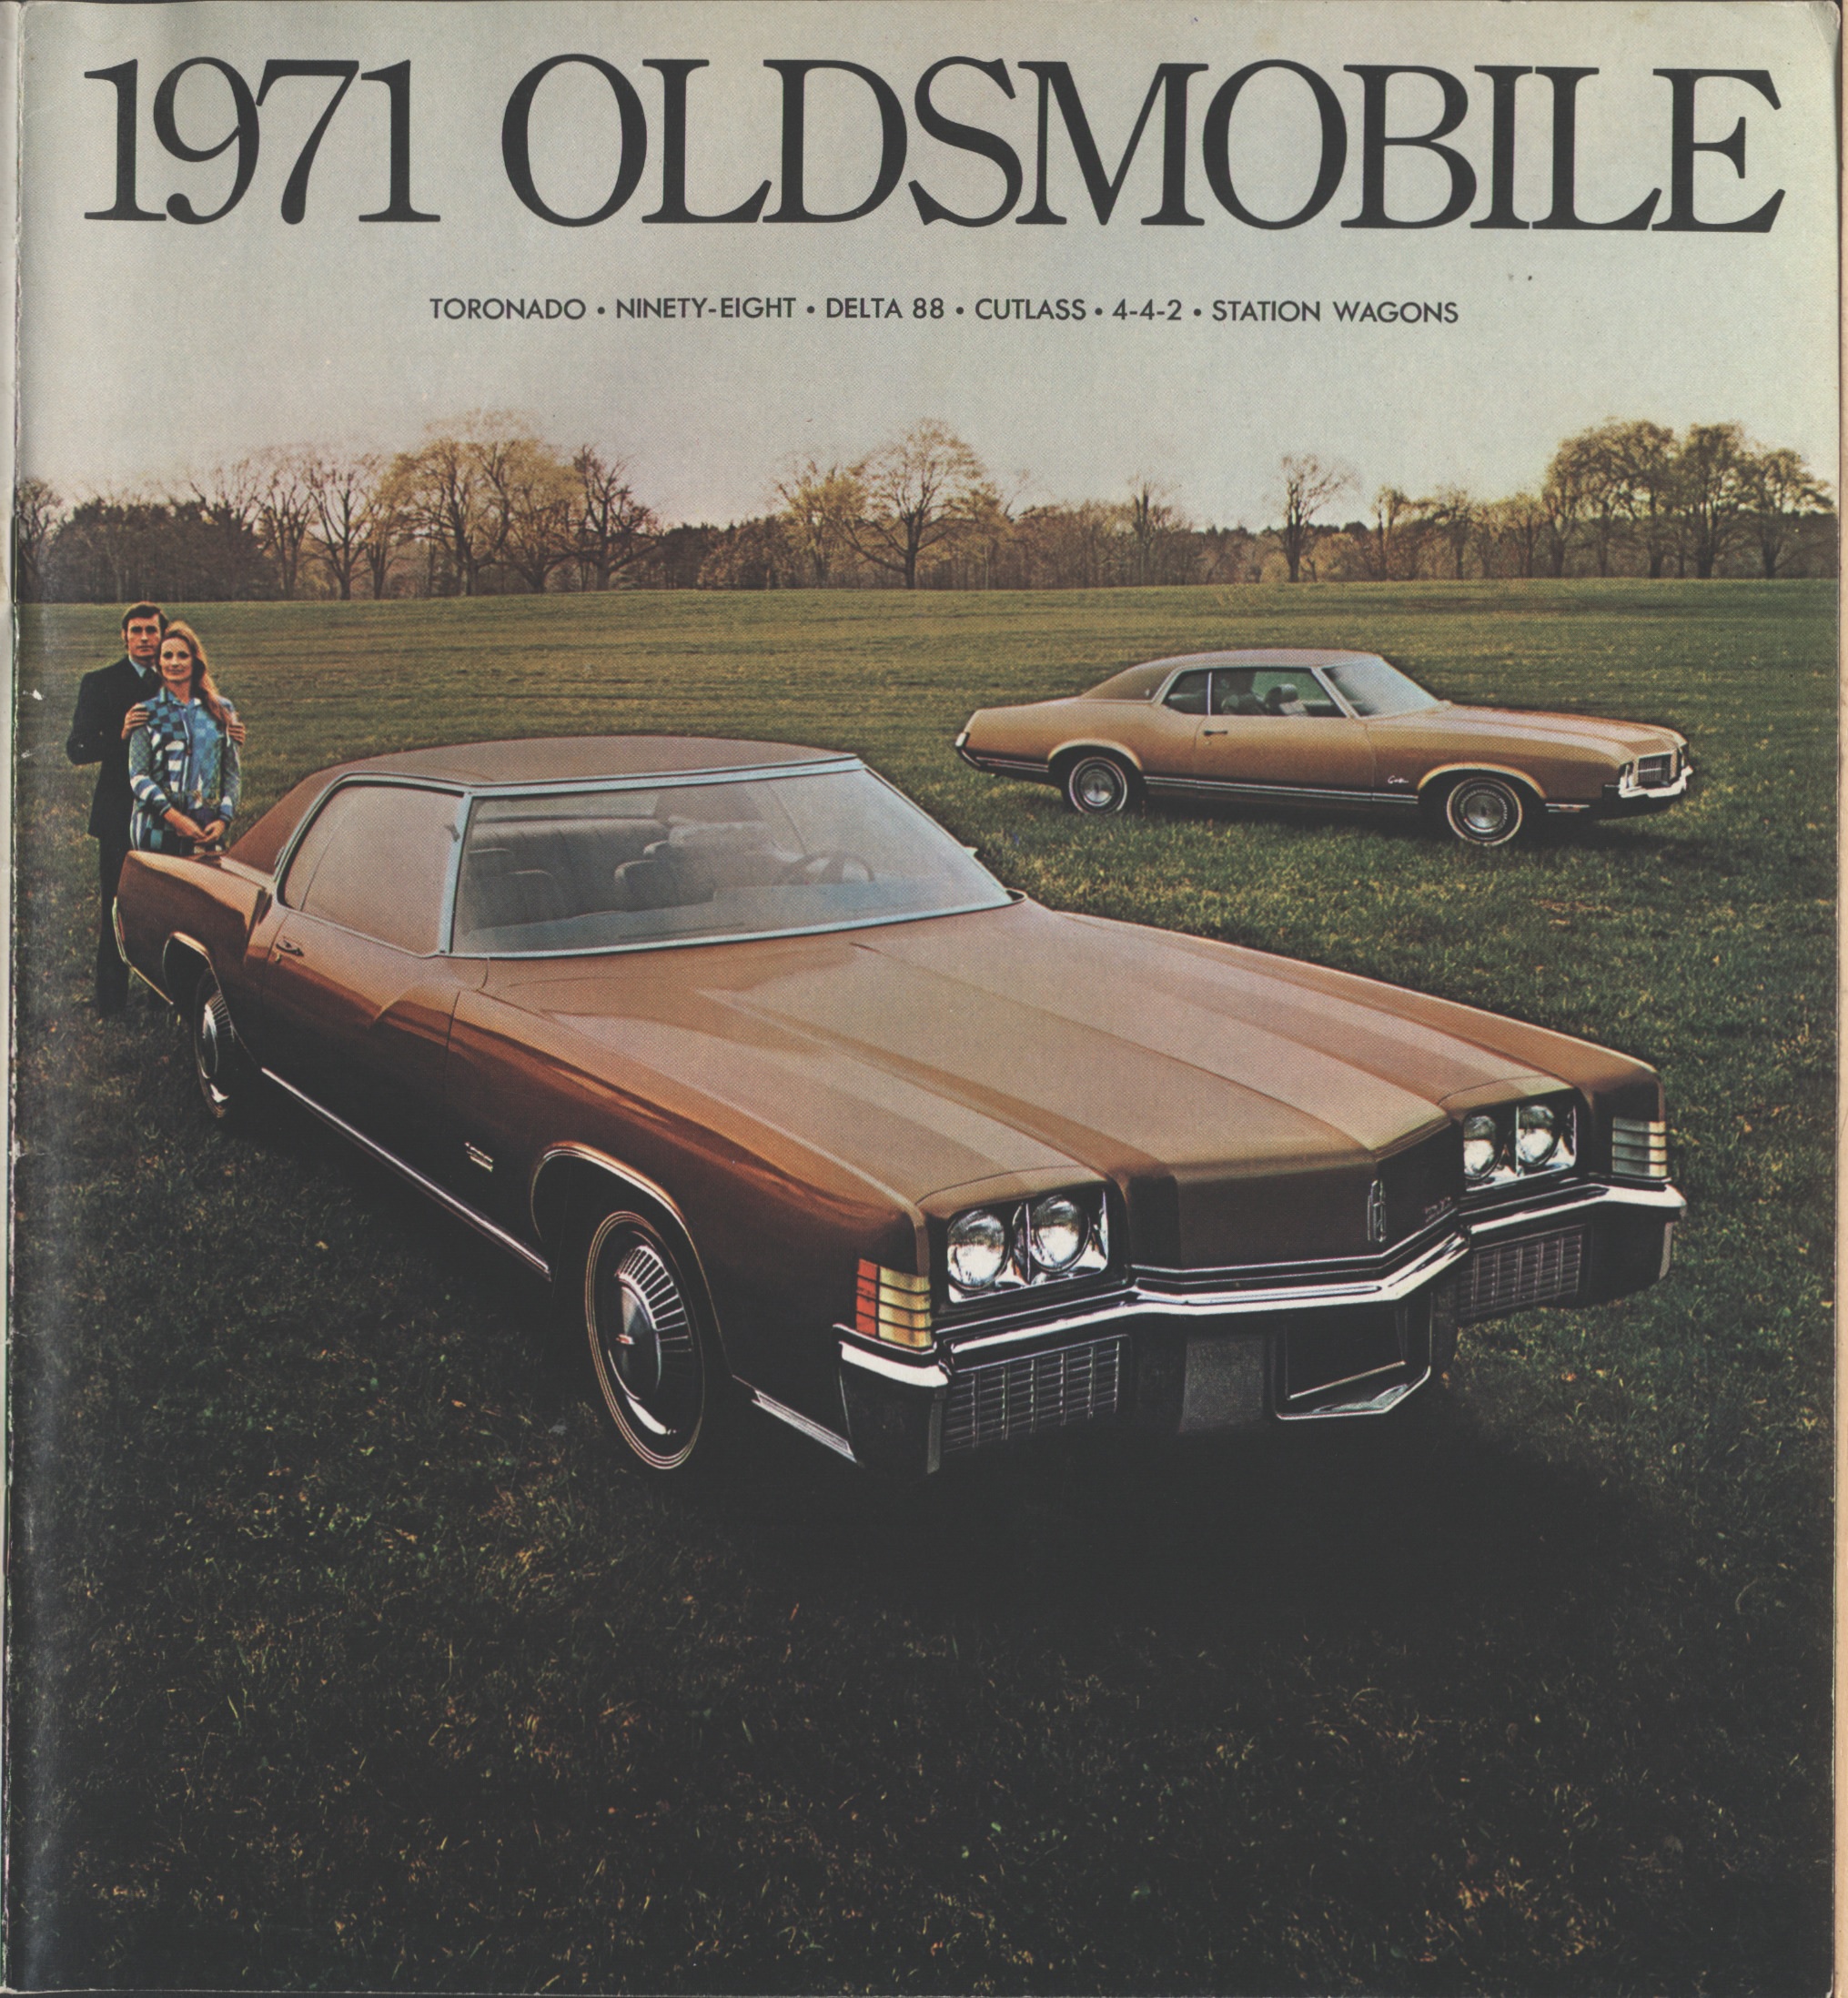 1971 Oldsmobile Full Line Brochure (Cdn) 01